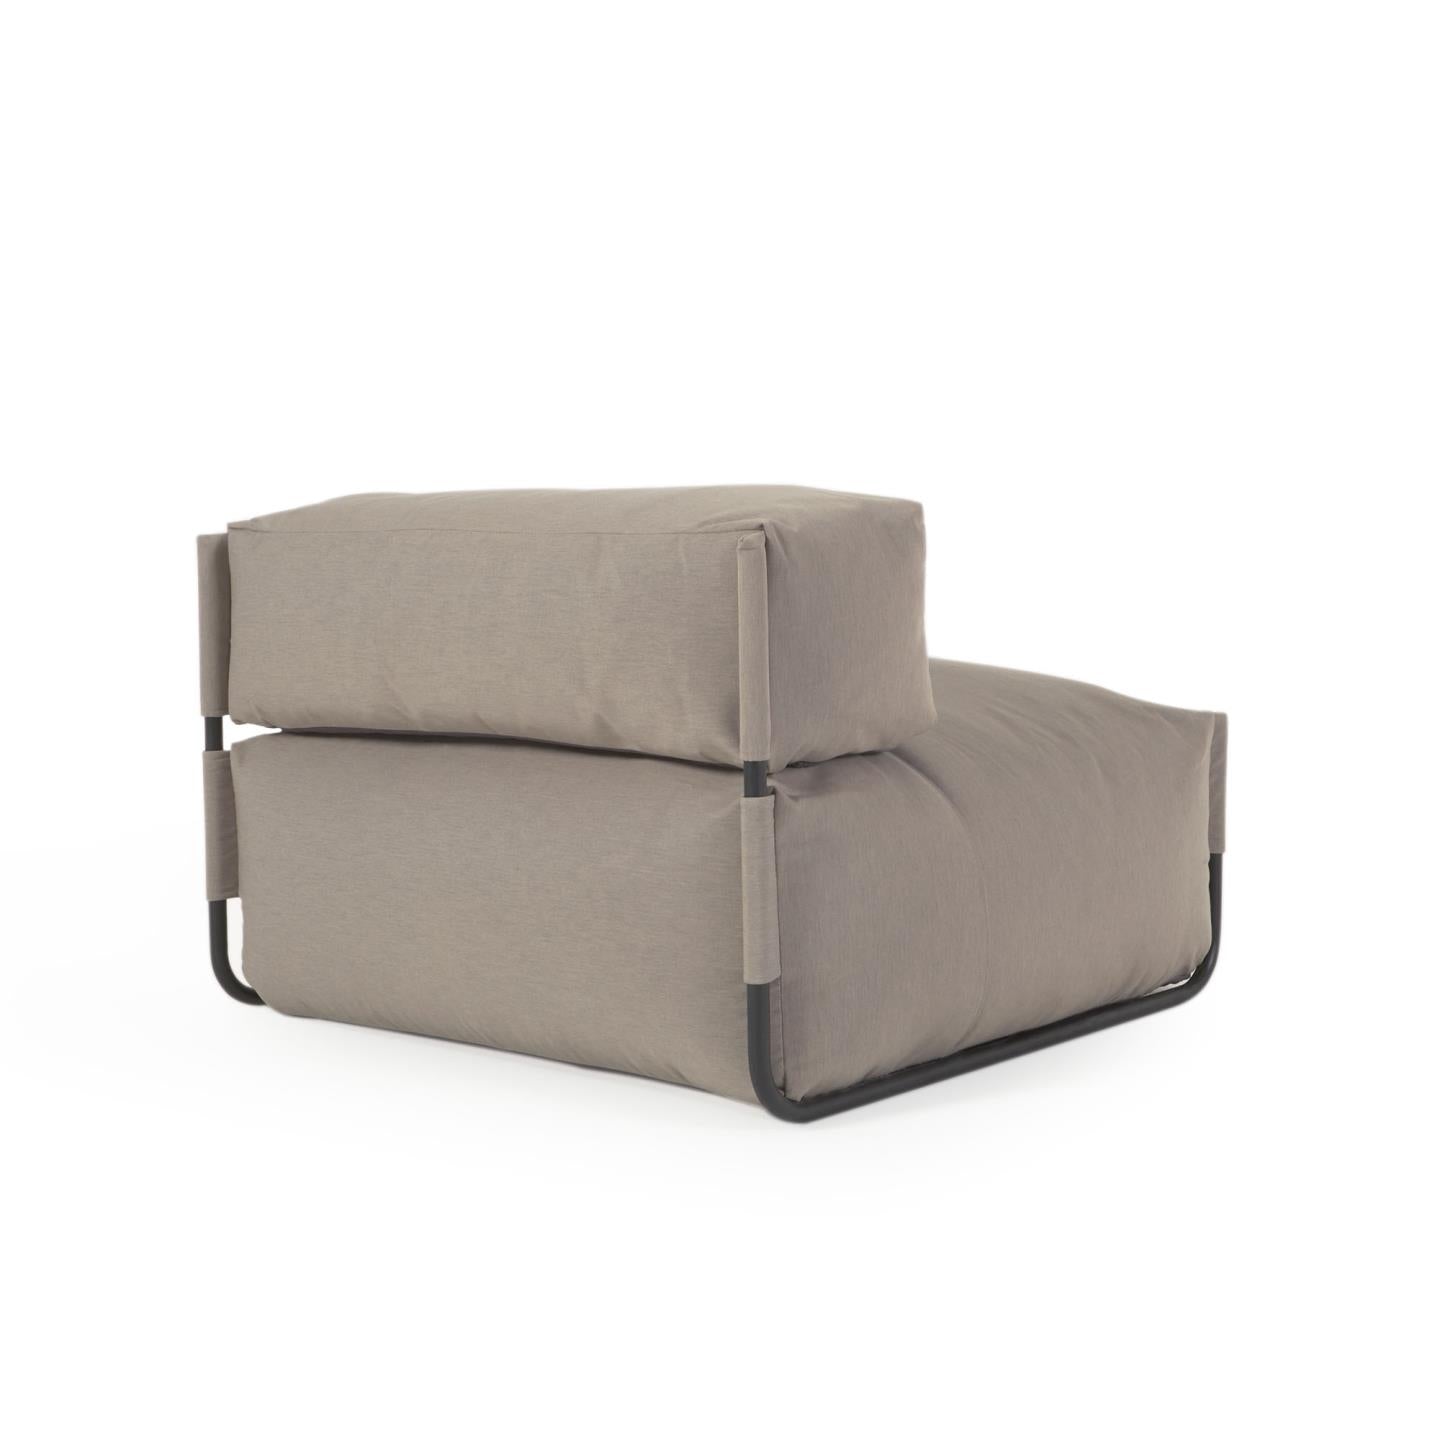 Square moduláris 100% kültéri kanapé puff, háttámlával, zöld, fekete alumíniummal, 101x101cm